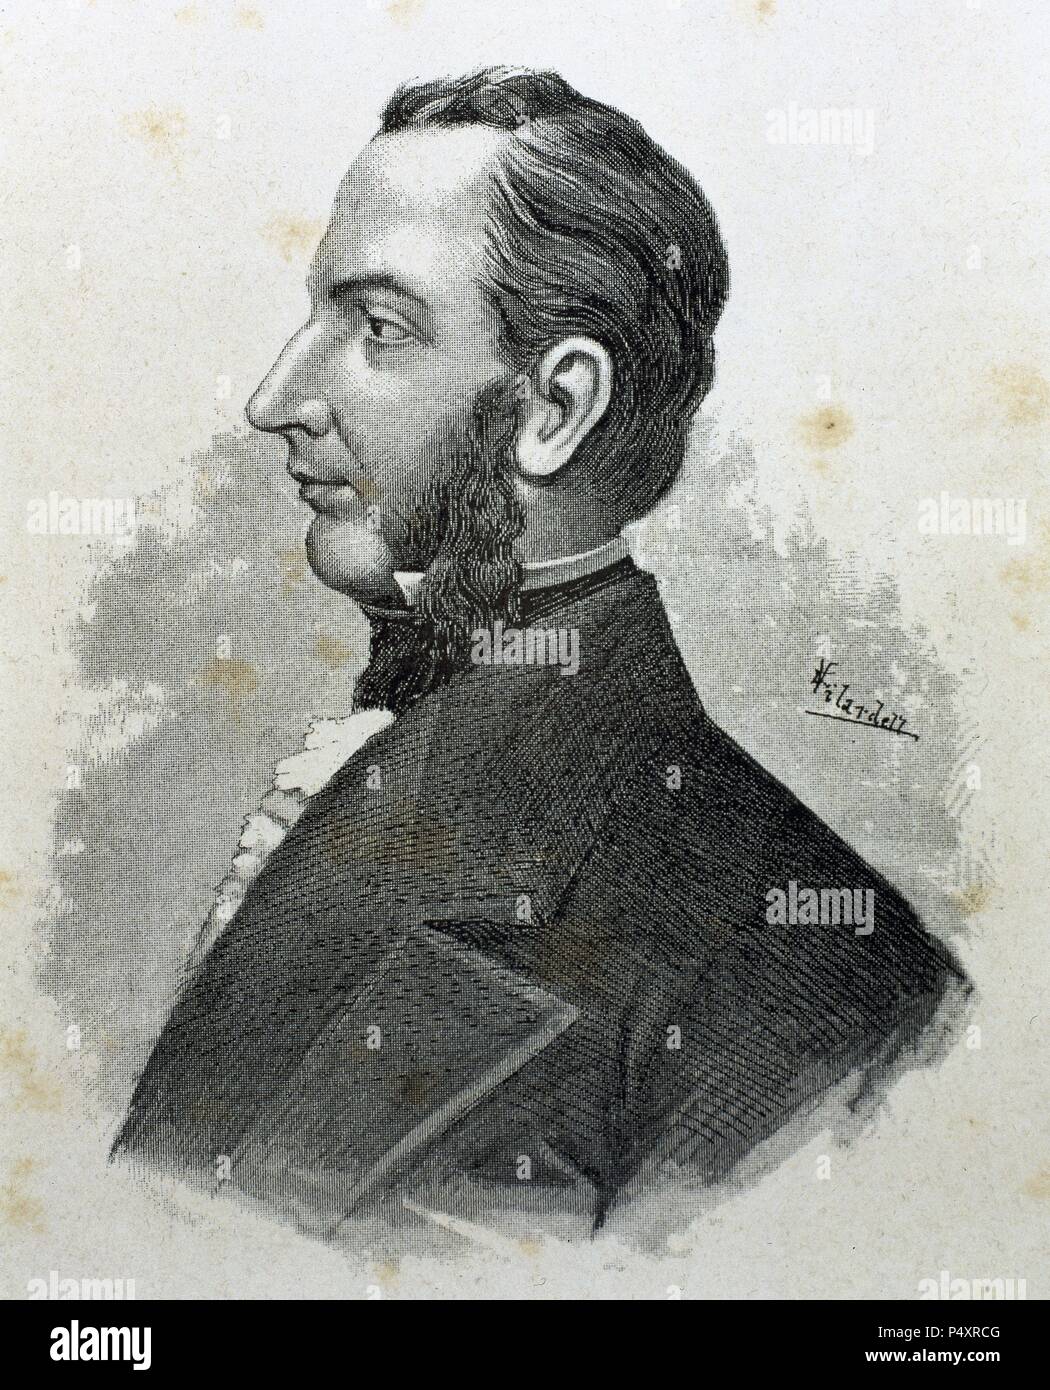 MORAZAN, Francisco (1792-1842). Político hondureño. Presidente de las Provincias Unidas de Centroamérica en 1829. Grabado de 'Americanos Célebres' (1888) . Stock Photo